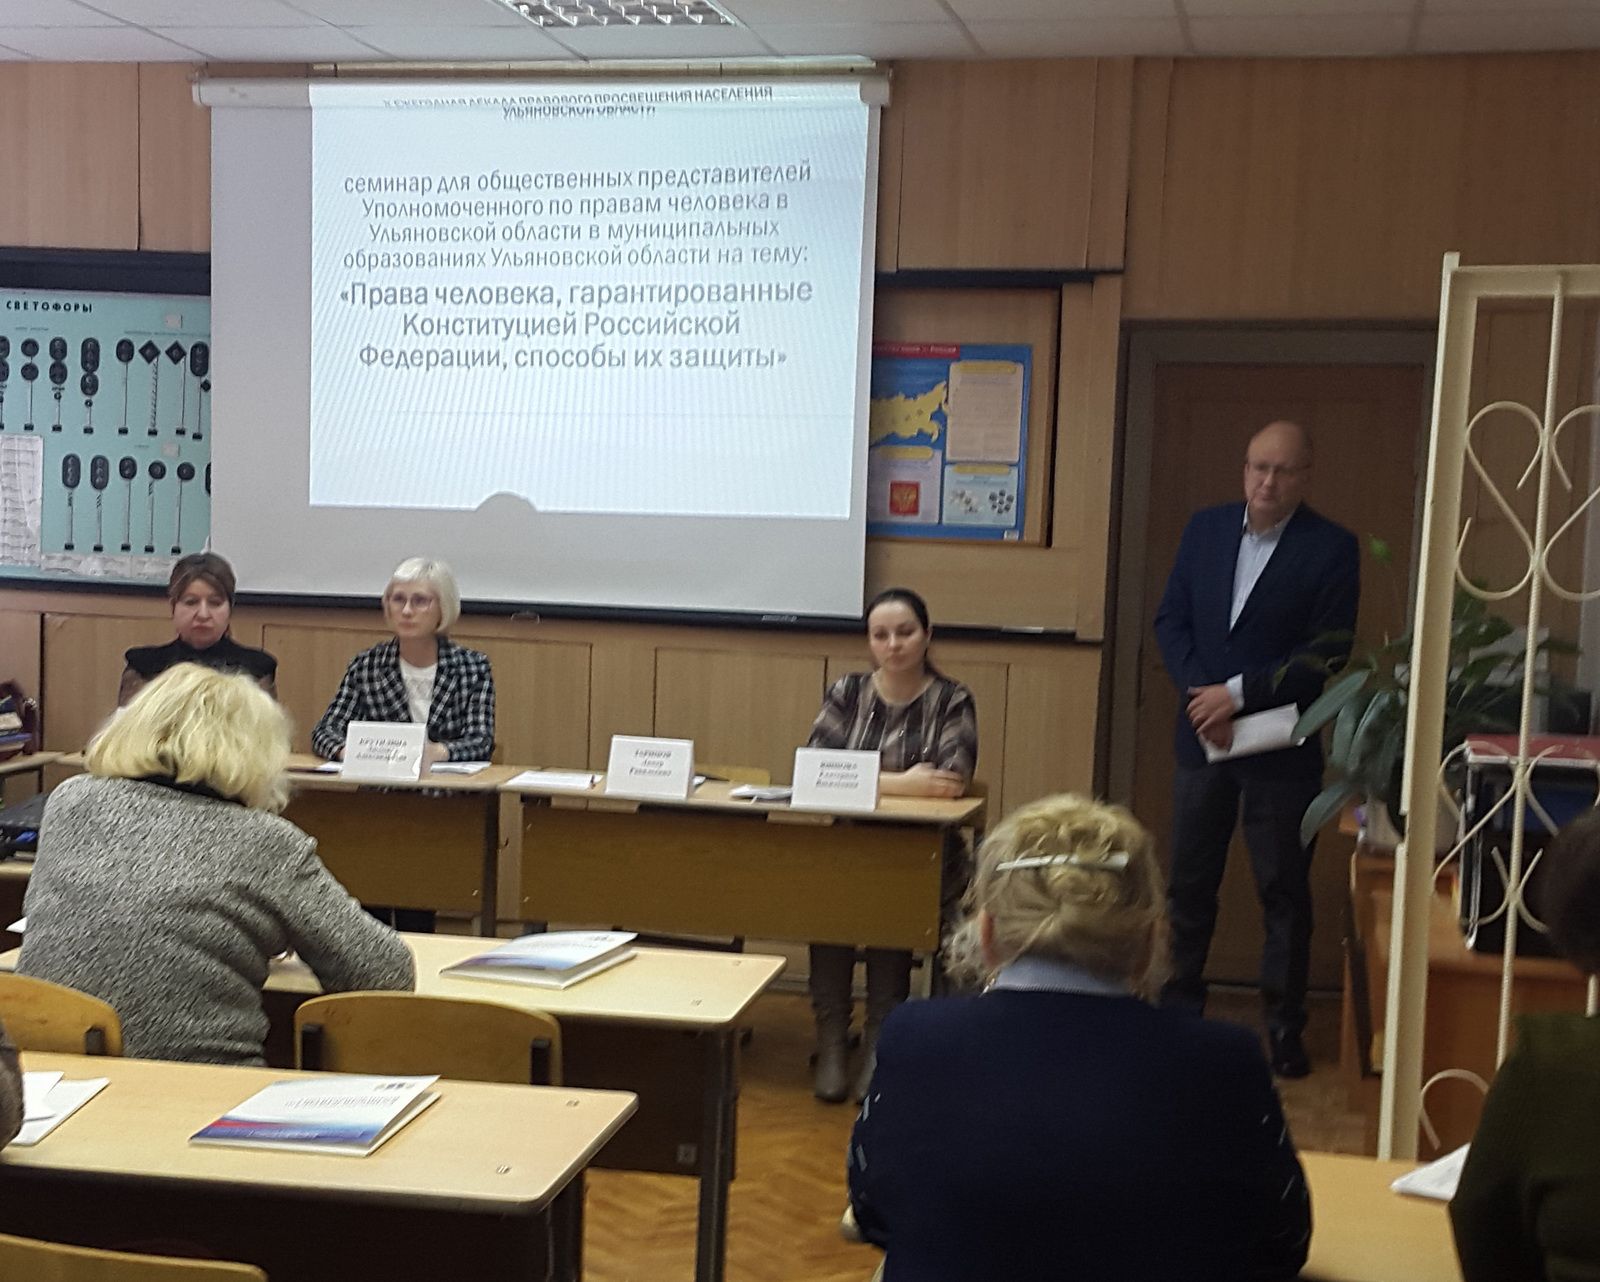 836 обращений и более 500 правовых занятий: предварительные итоги работы уполномоченного по правам человека в Ульяновской области